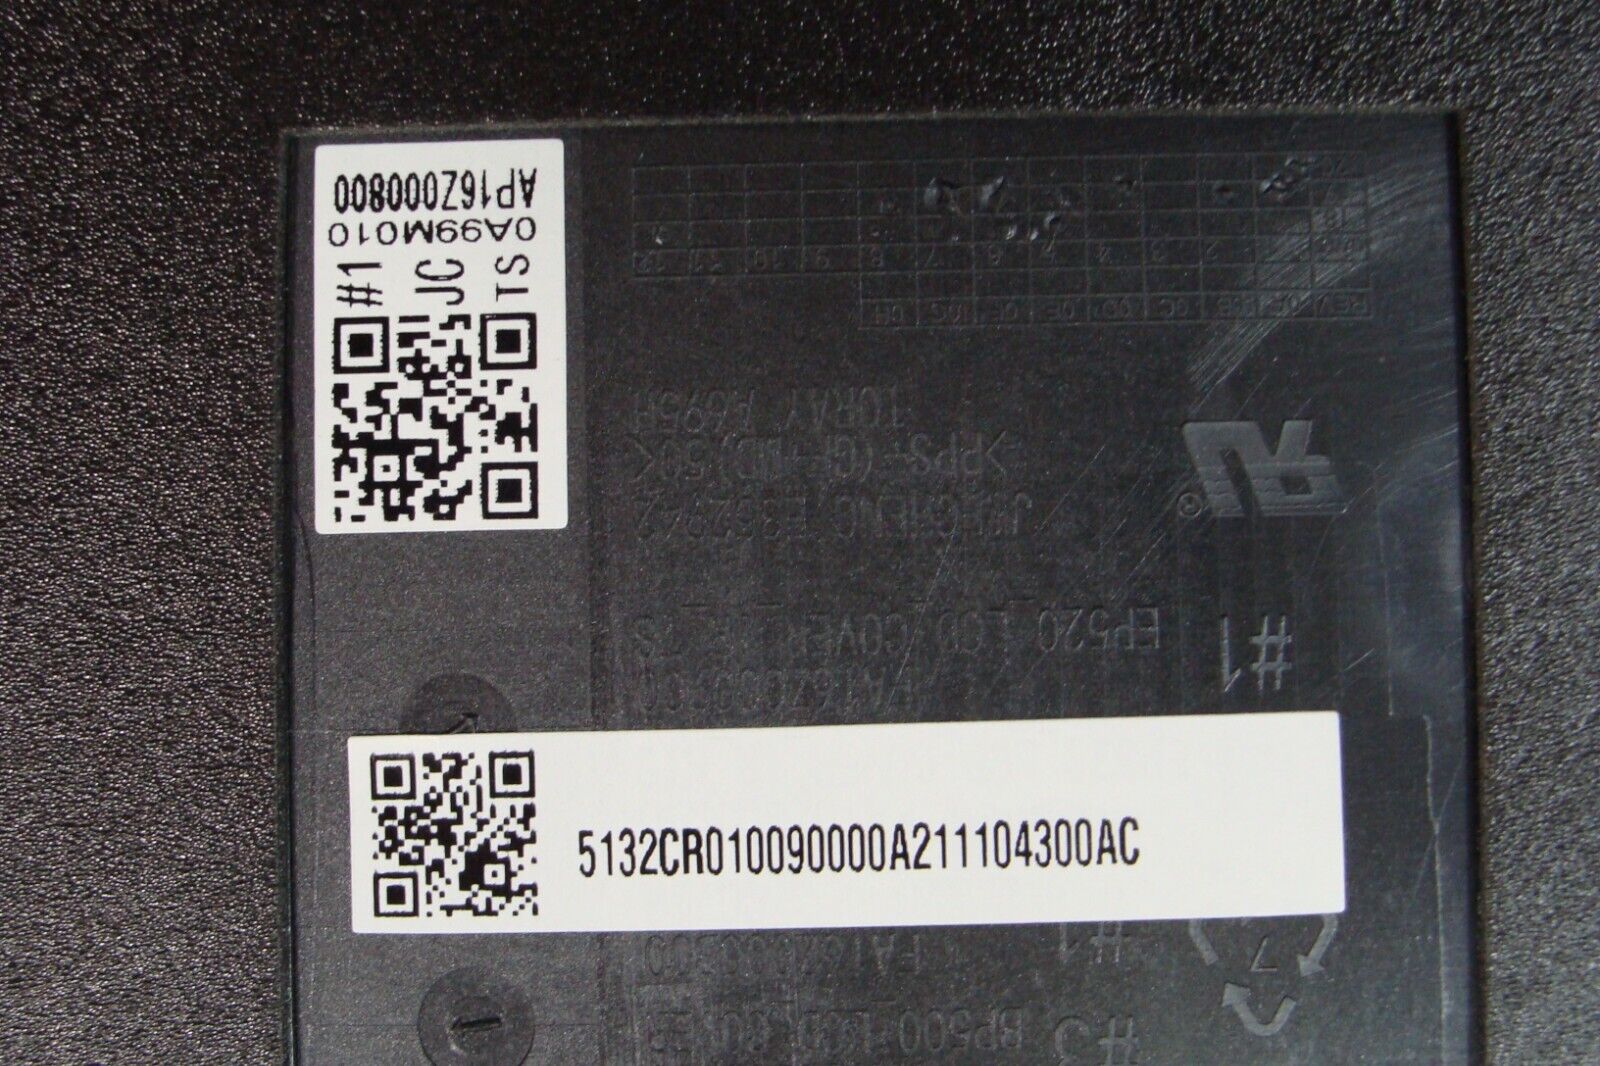 Lenovo ThinkPad 15.6” P52 Genuine Laptop LCD Back Cover AP16Z000800